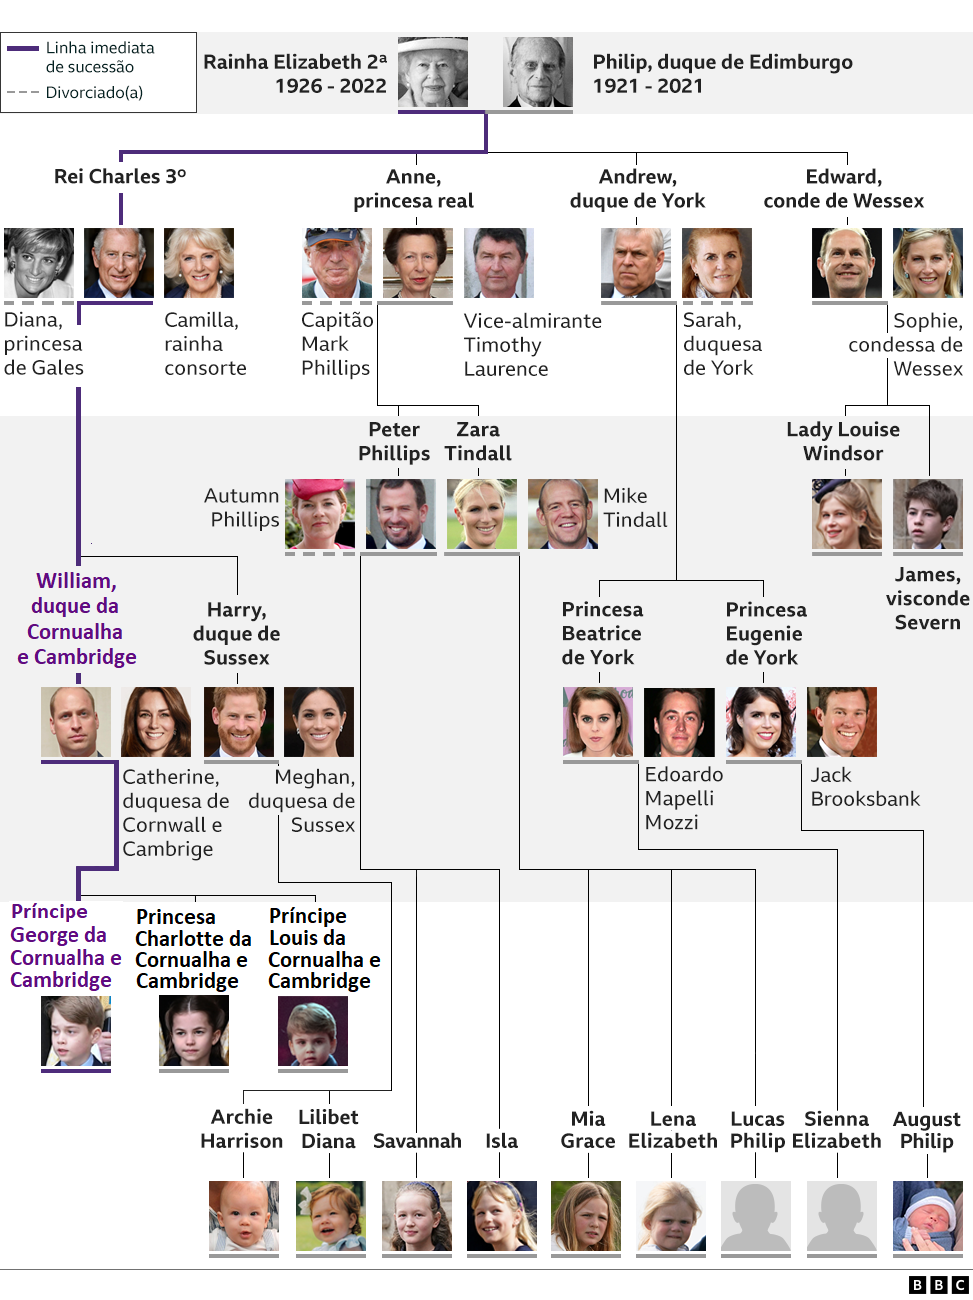 Infografia mostrando a família real